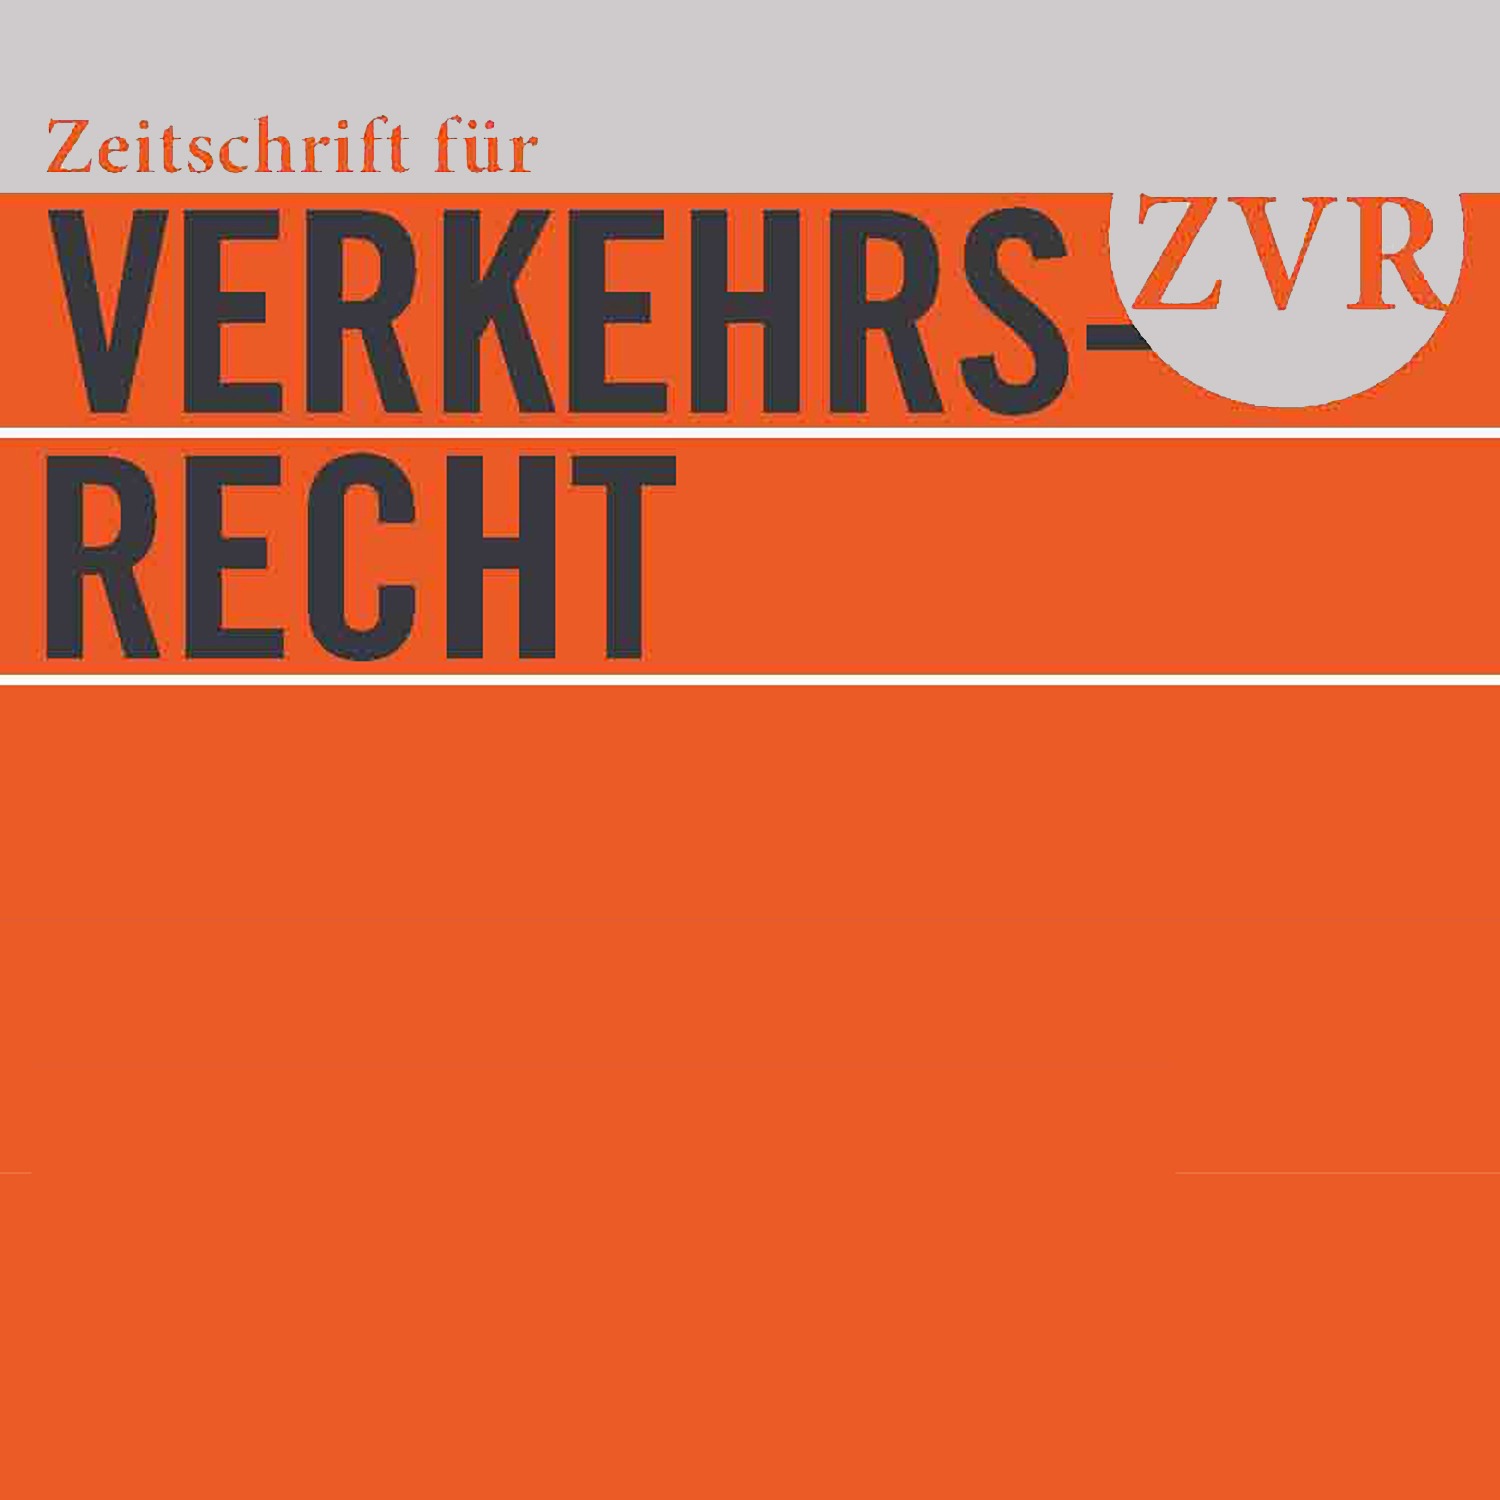 Just published – Von Testfahrten zum regulären Einsatz automatisierter Fahrzeuge